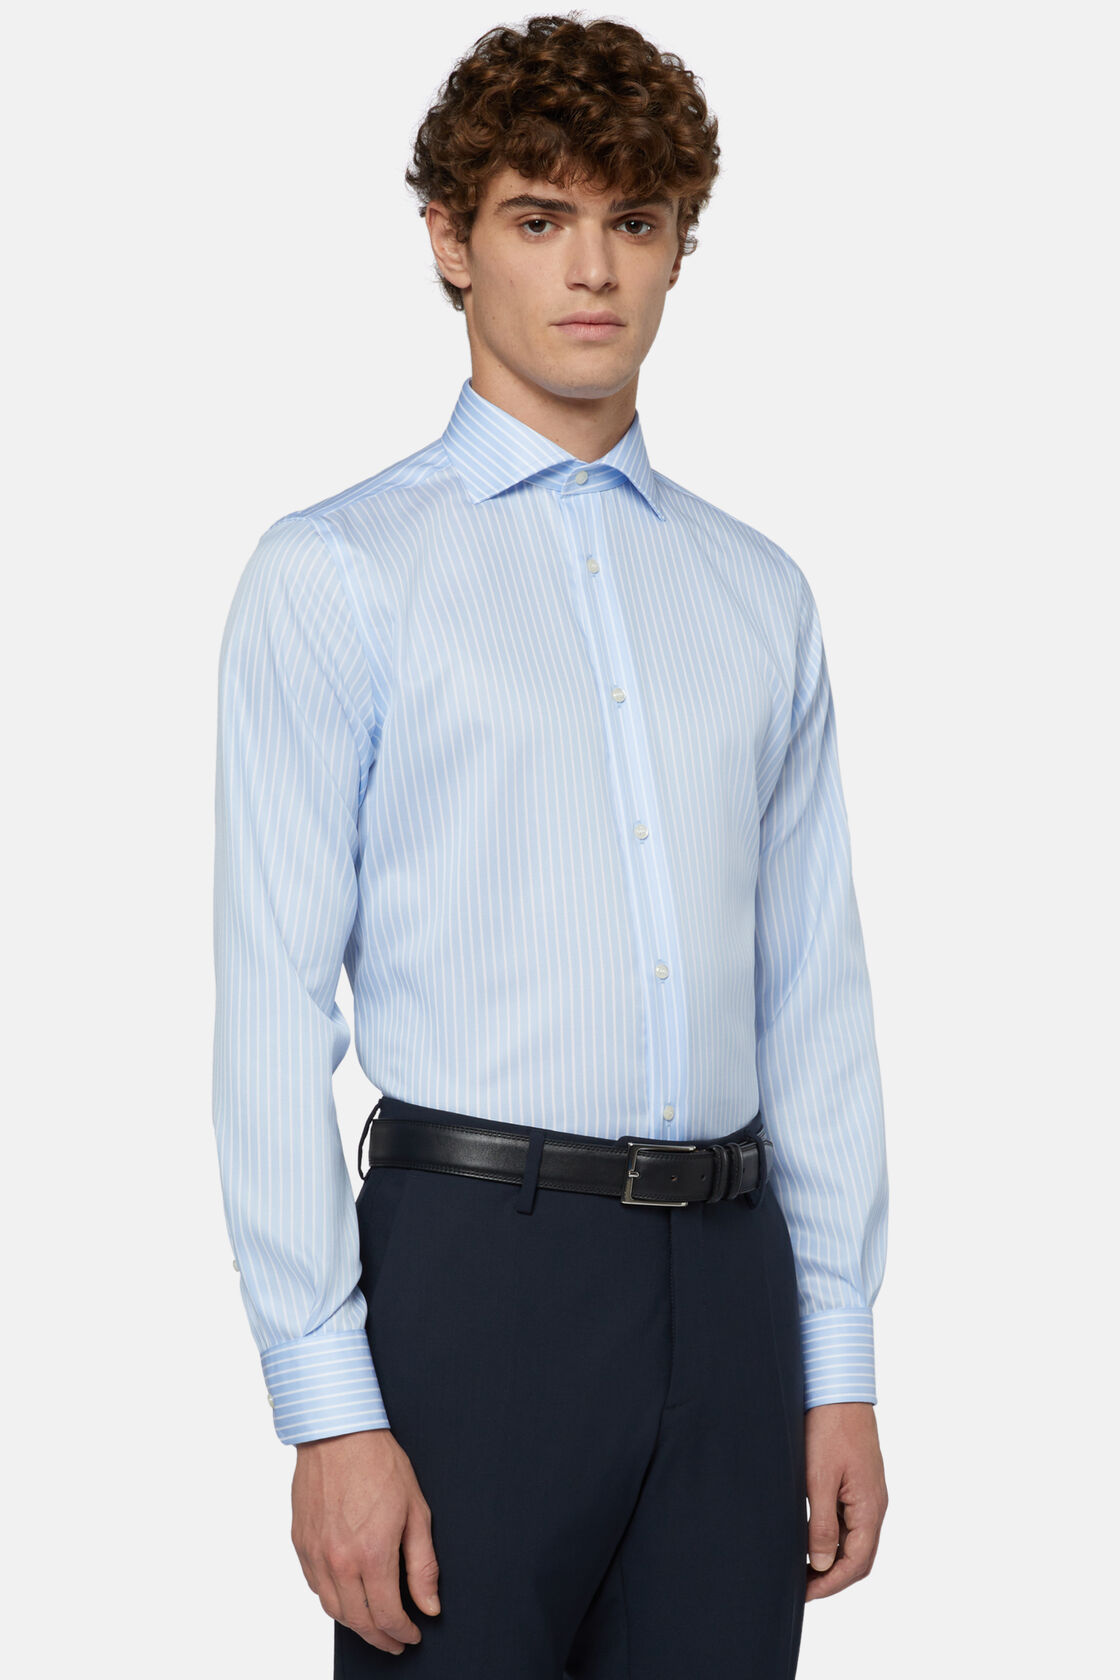 Bawełniana koszula z twillu w błękitne paski, fason klasyczny, Light Blue, hi-res